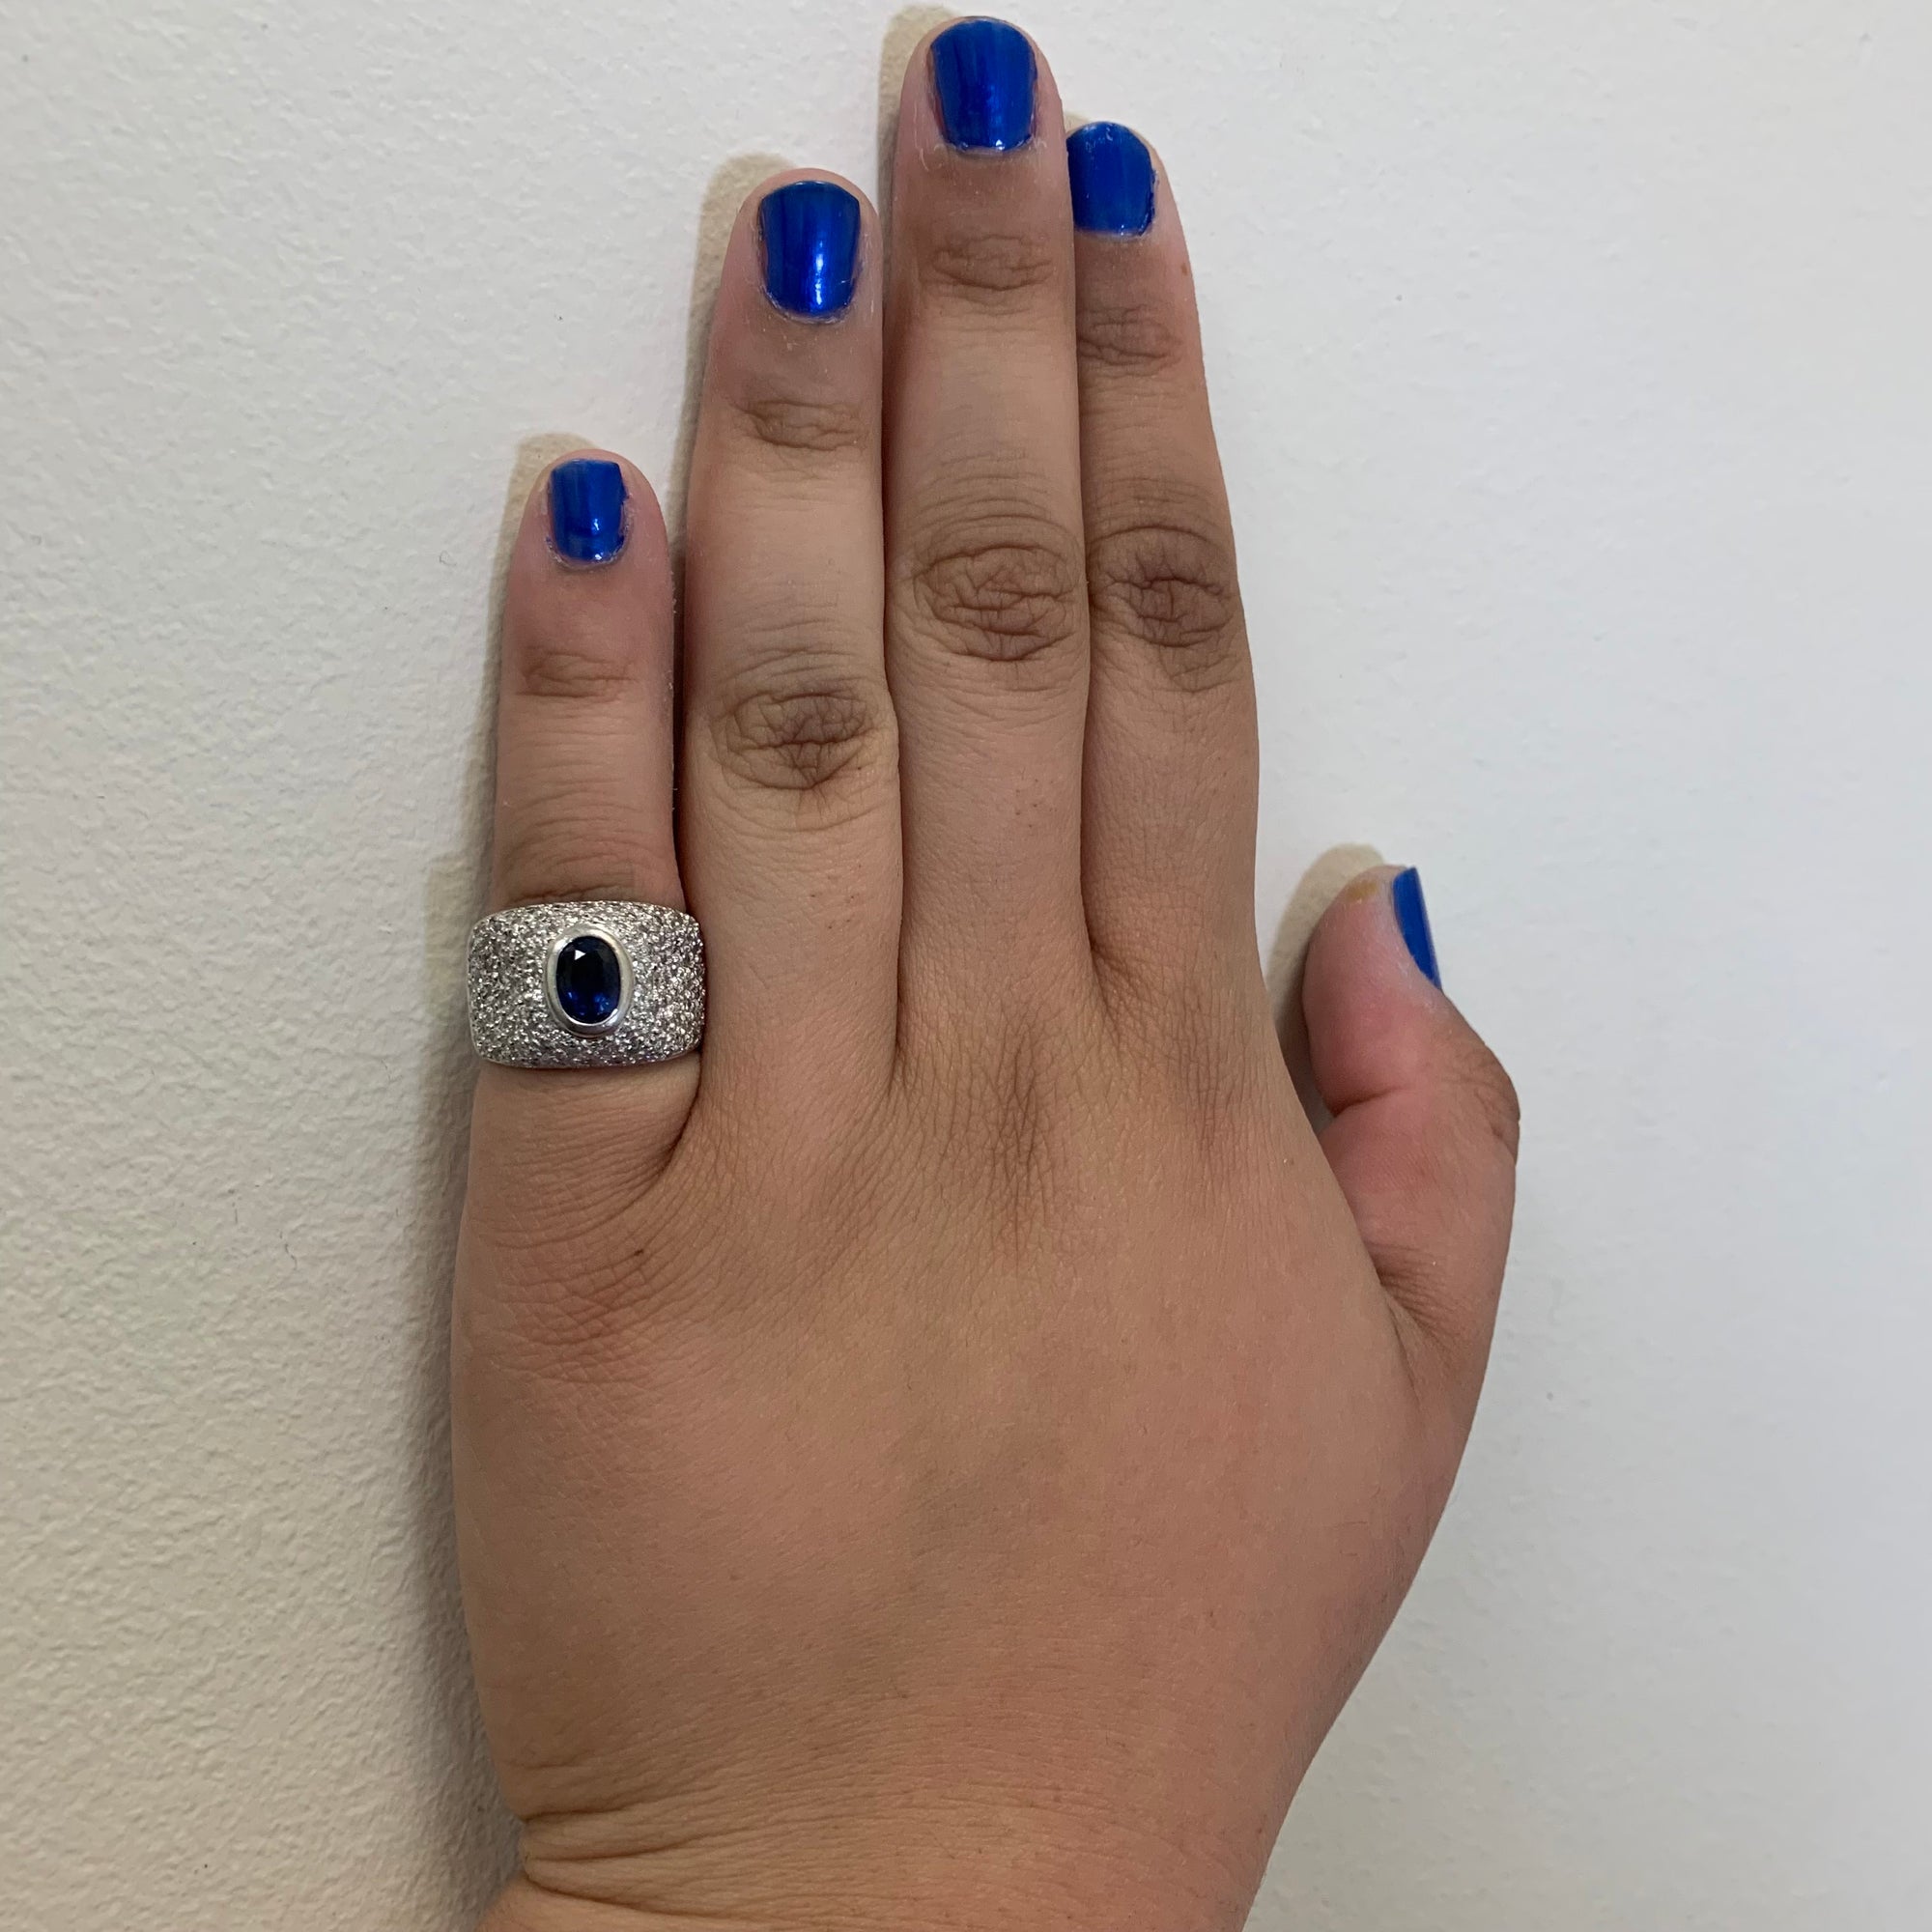 Diamond Encrusted Blue Sapphire Ring | 1.36ctw, 1.24ct | SZ 5.25 |